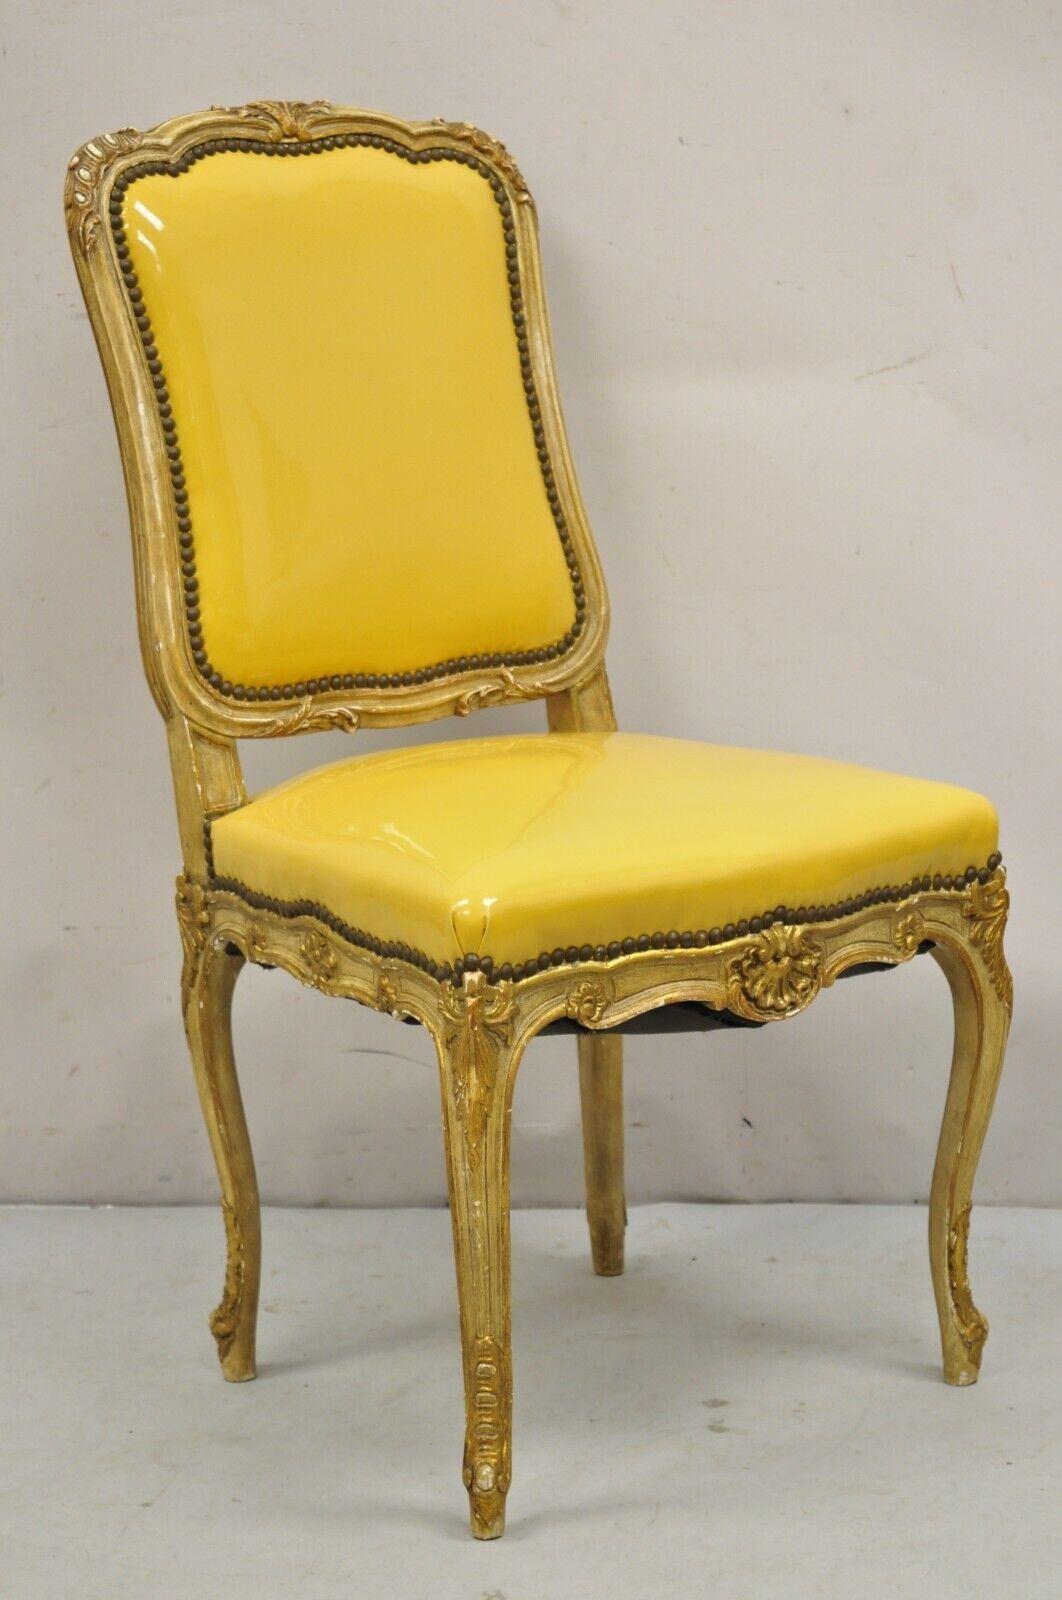 Chaises d'appoint de salle à manger en bois sculpté et doré de style Louis XV - Lot de 10.  L'article présente un ensemble très rare de 10 chaises de salle à manger sans accoudoirs, cadre sculpté et doré, finition crème et or bruni, pieds cabriole